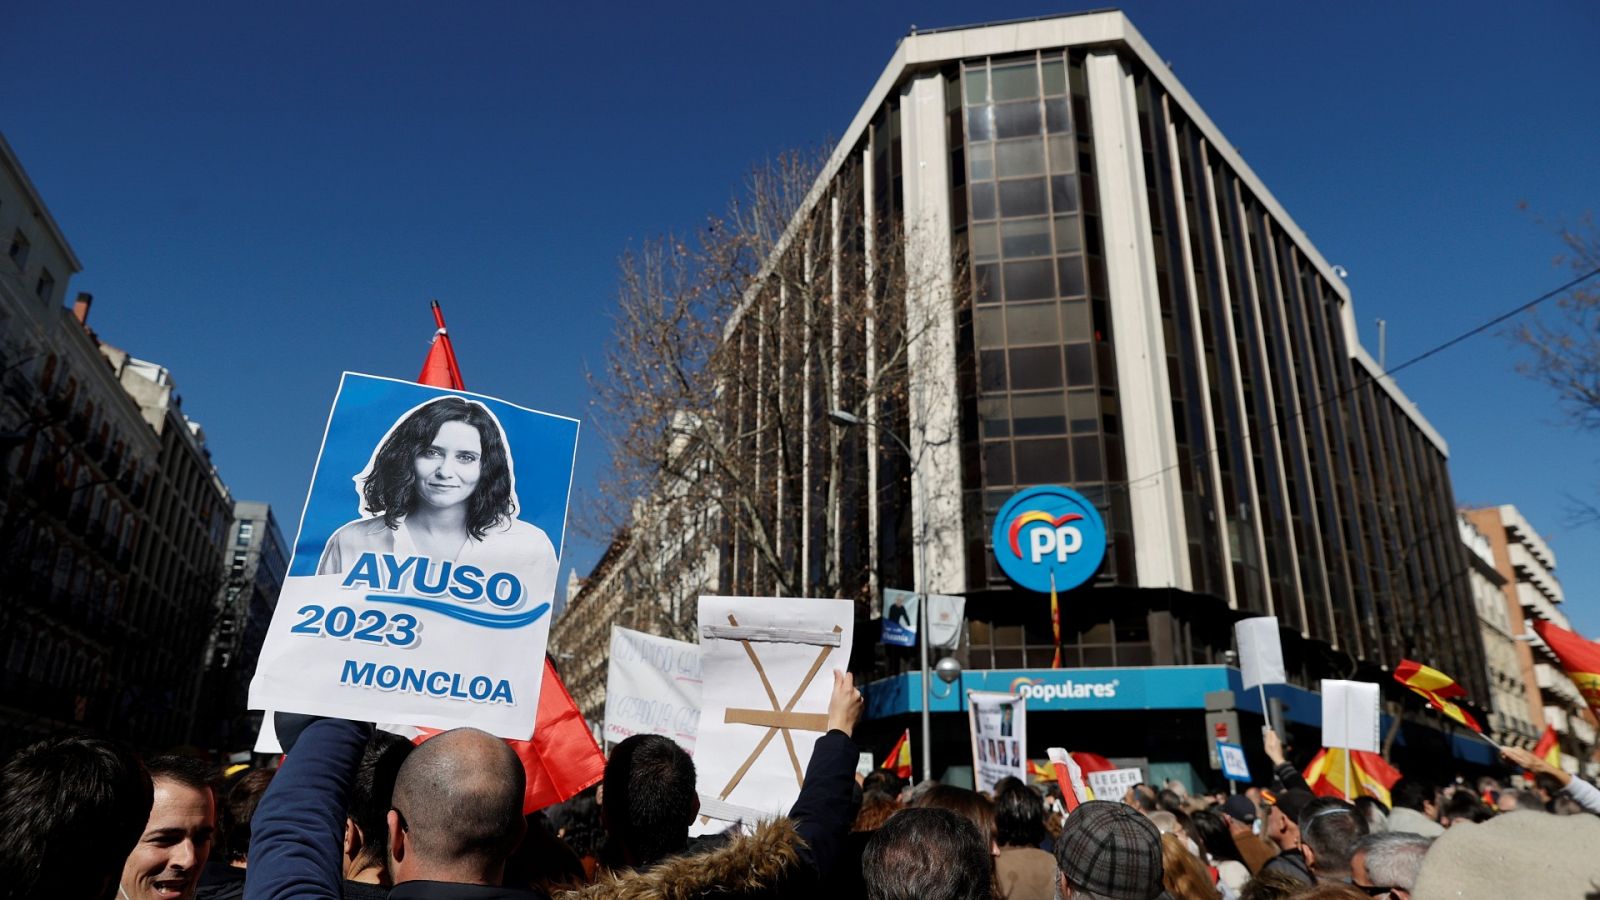 Crisis en el PP: Cientos de personas piden la dimisión de Casado y Egea